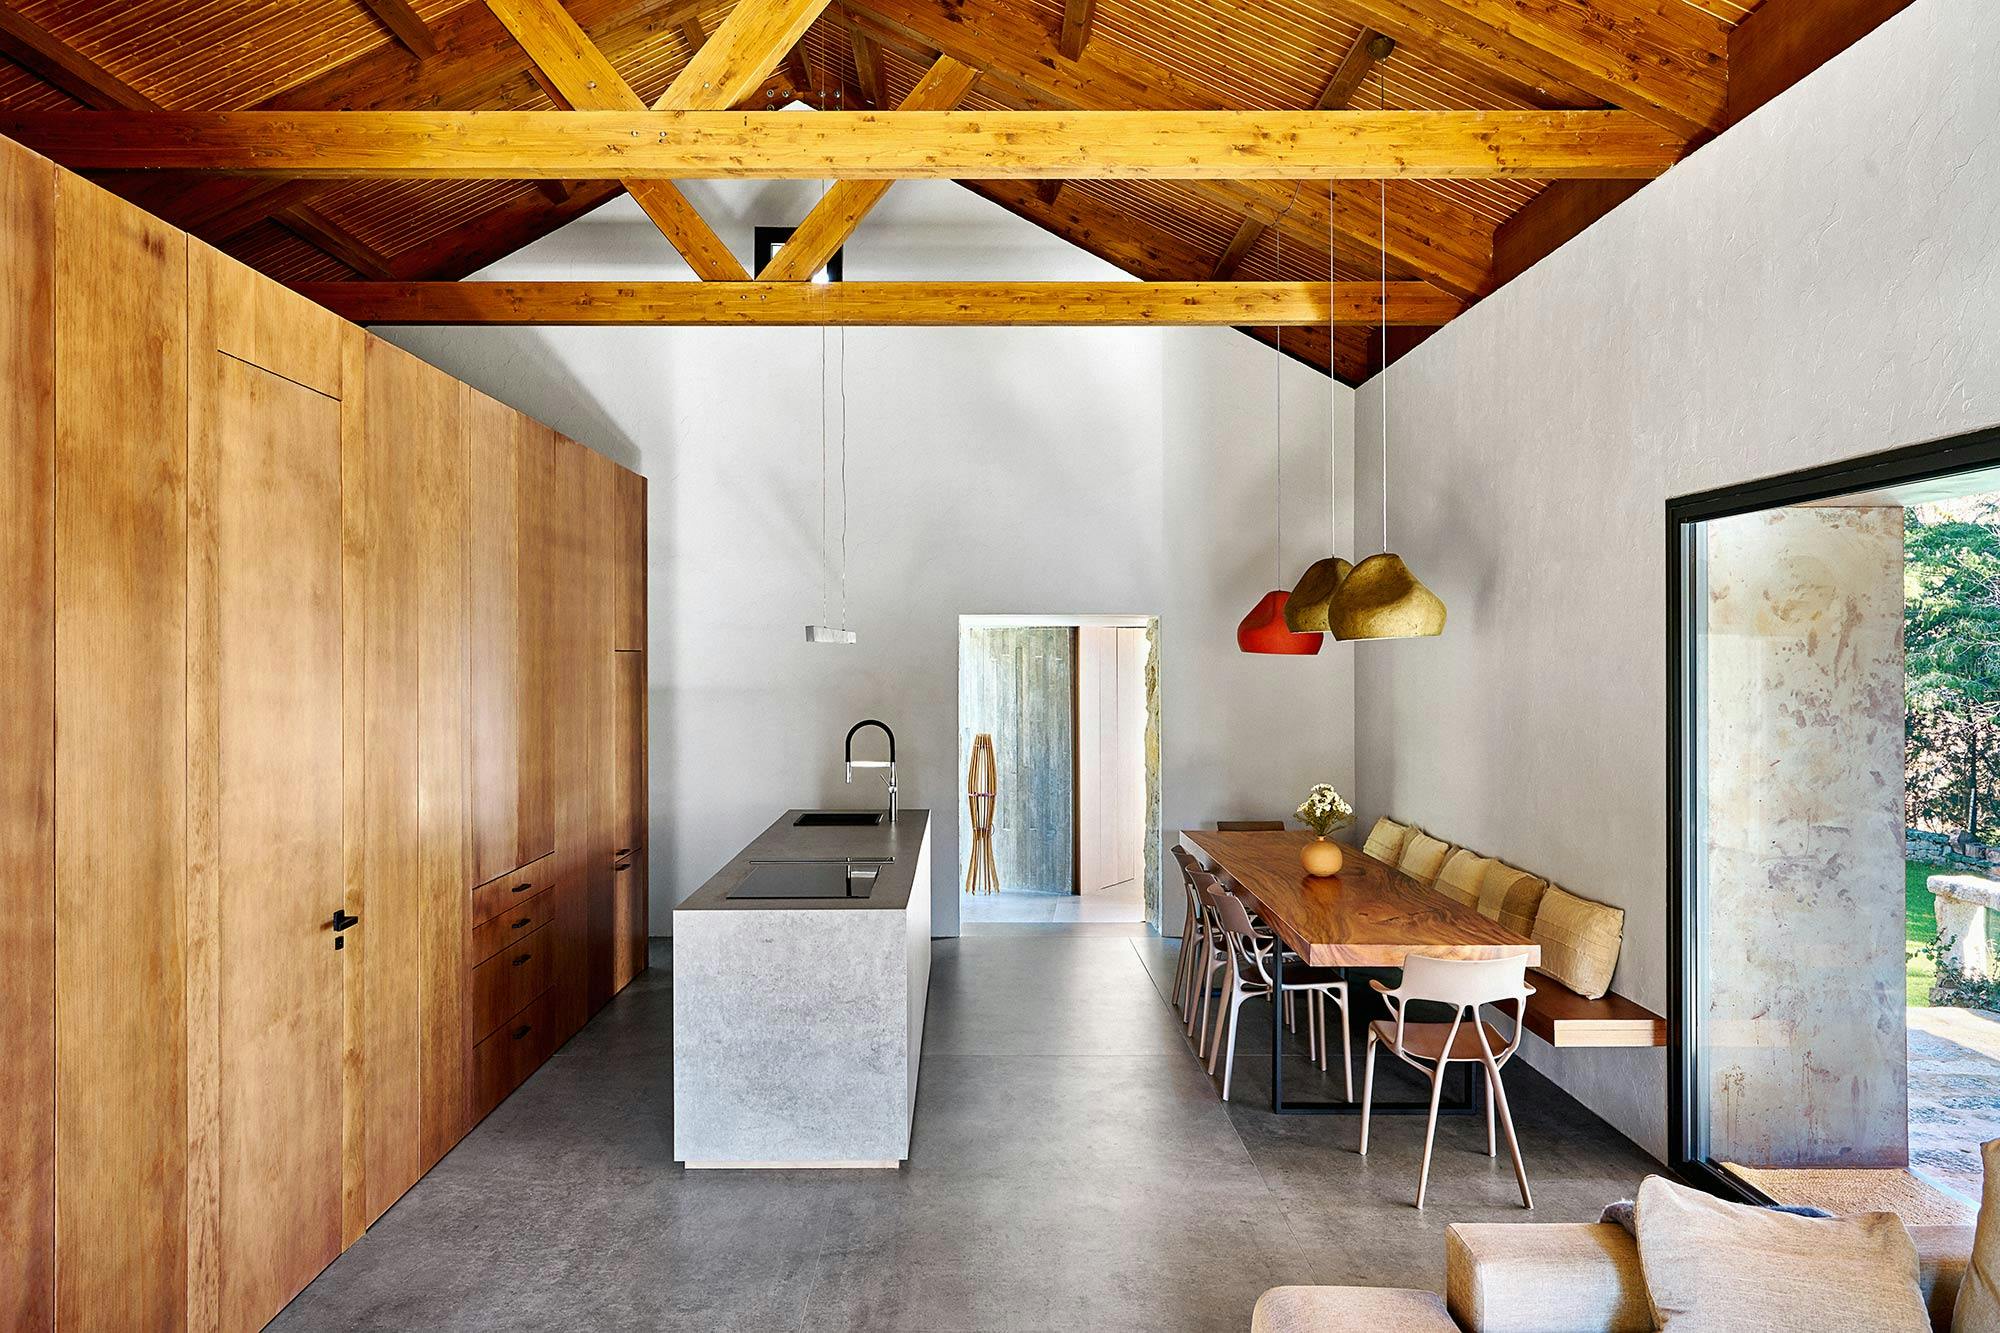 Bildnummer 42 des aktuellen Abschnitts von An open concept kitchen by MS2 Design Studio in a luxury South Beach condo von Cosentino Deutschland